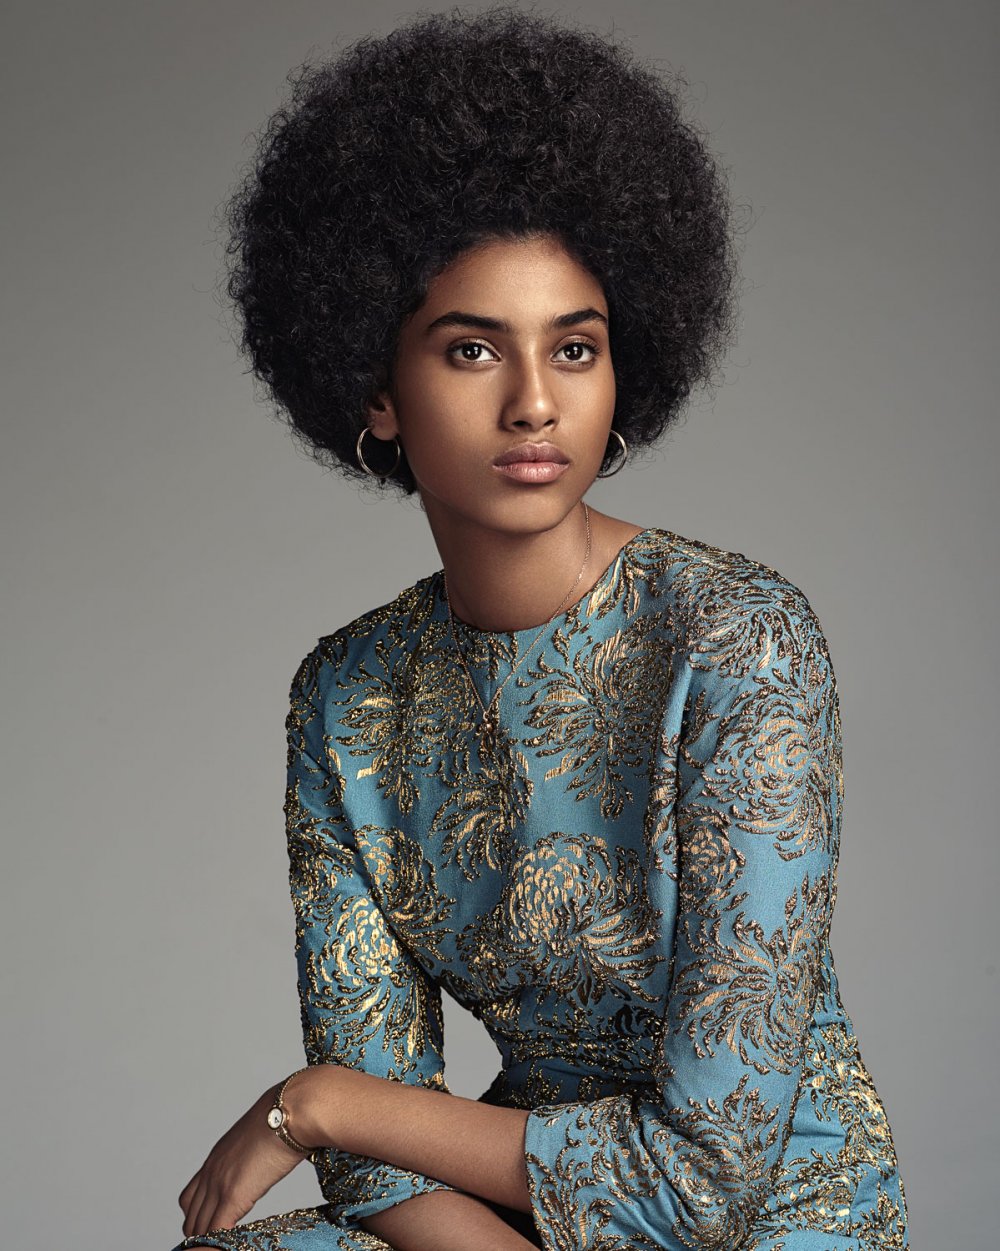 Imaan Hammam for Vogue Netherlands September 2015. 